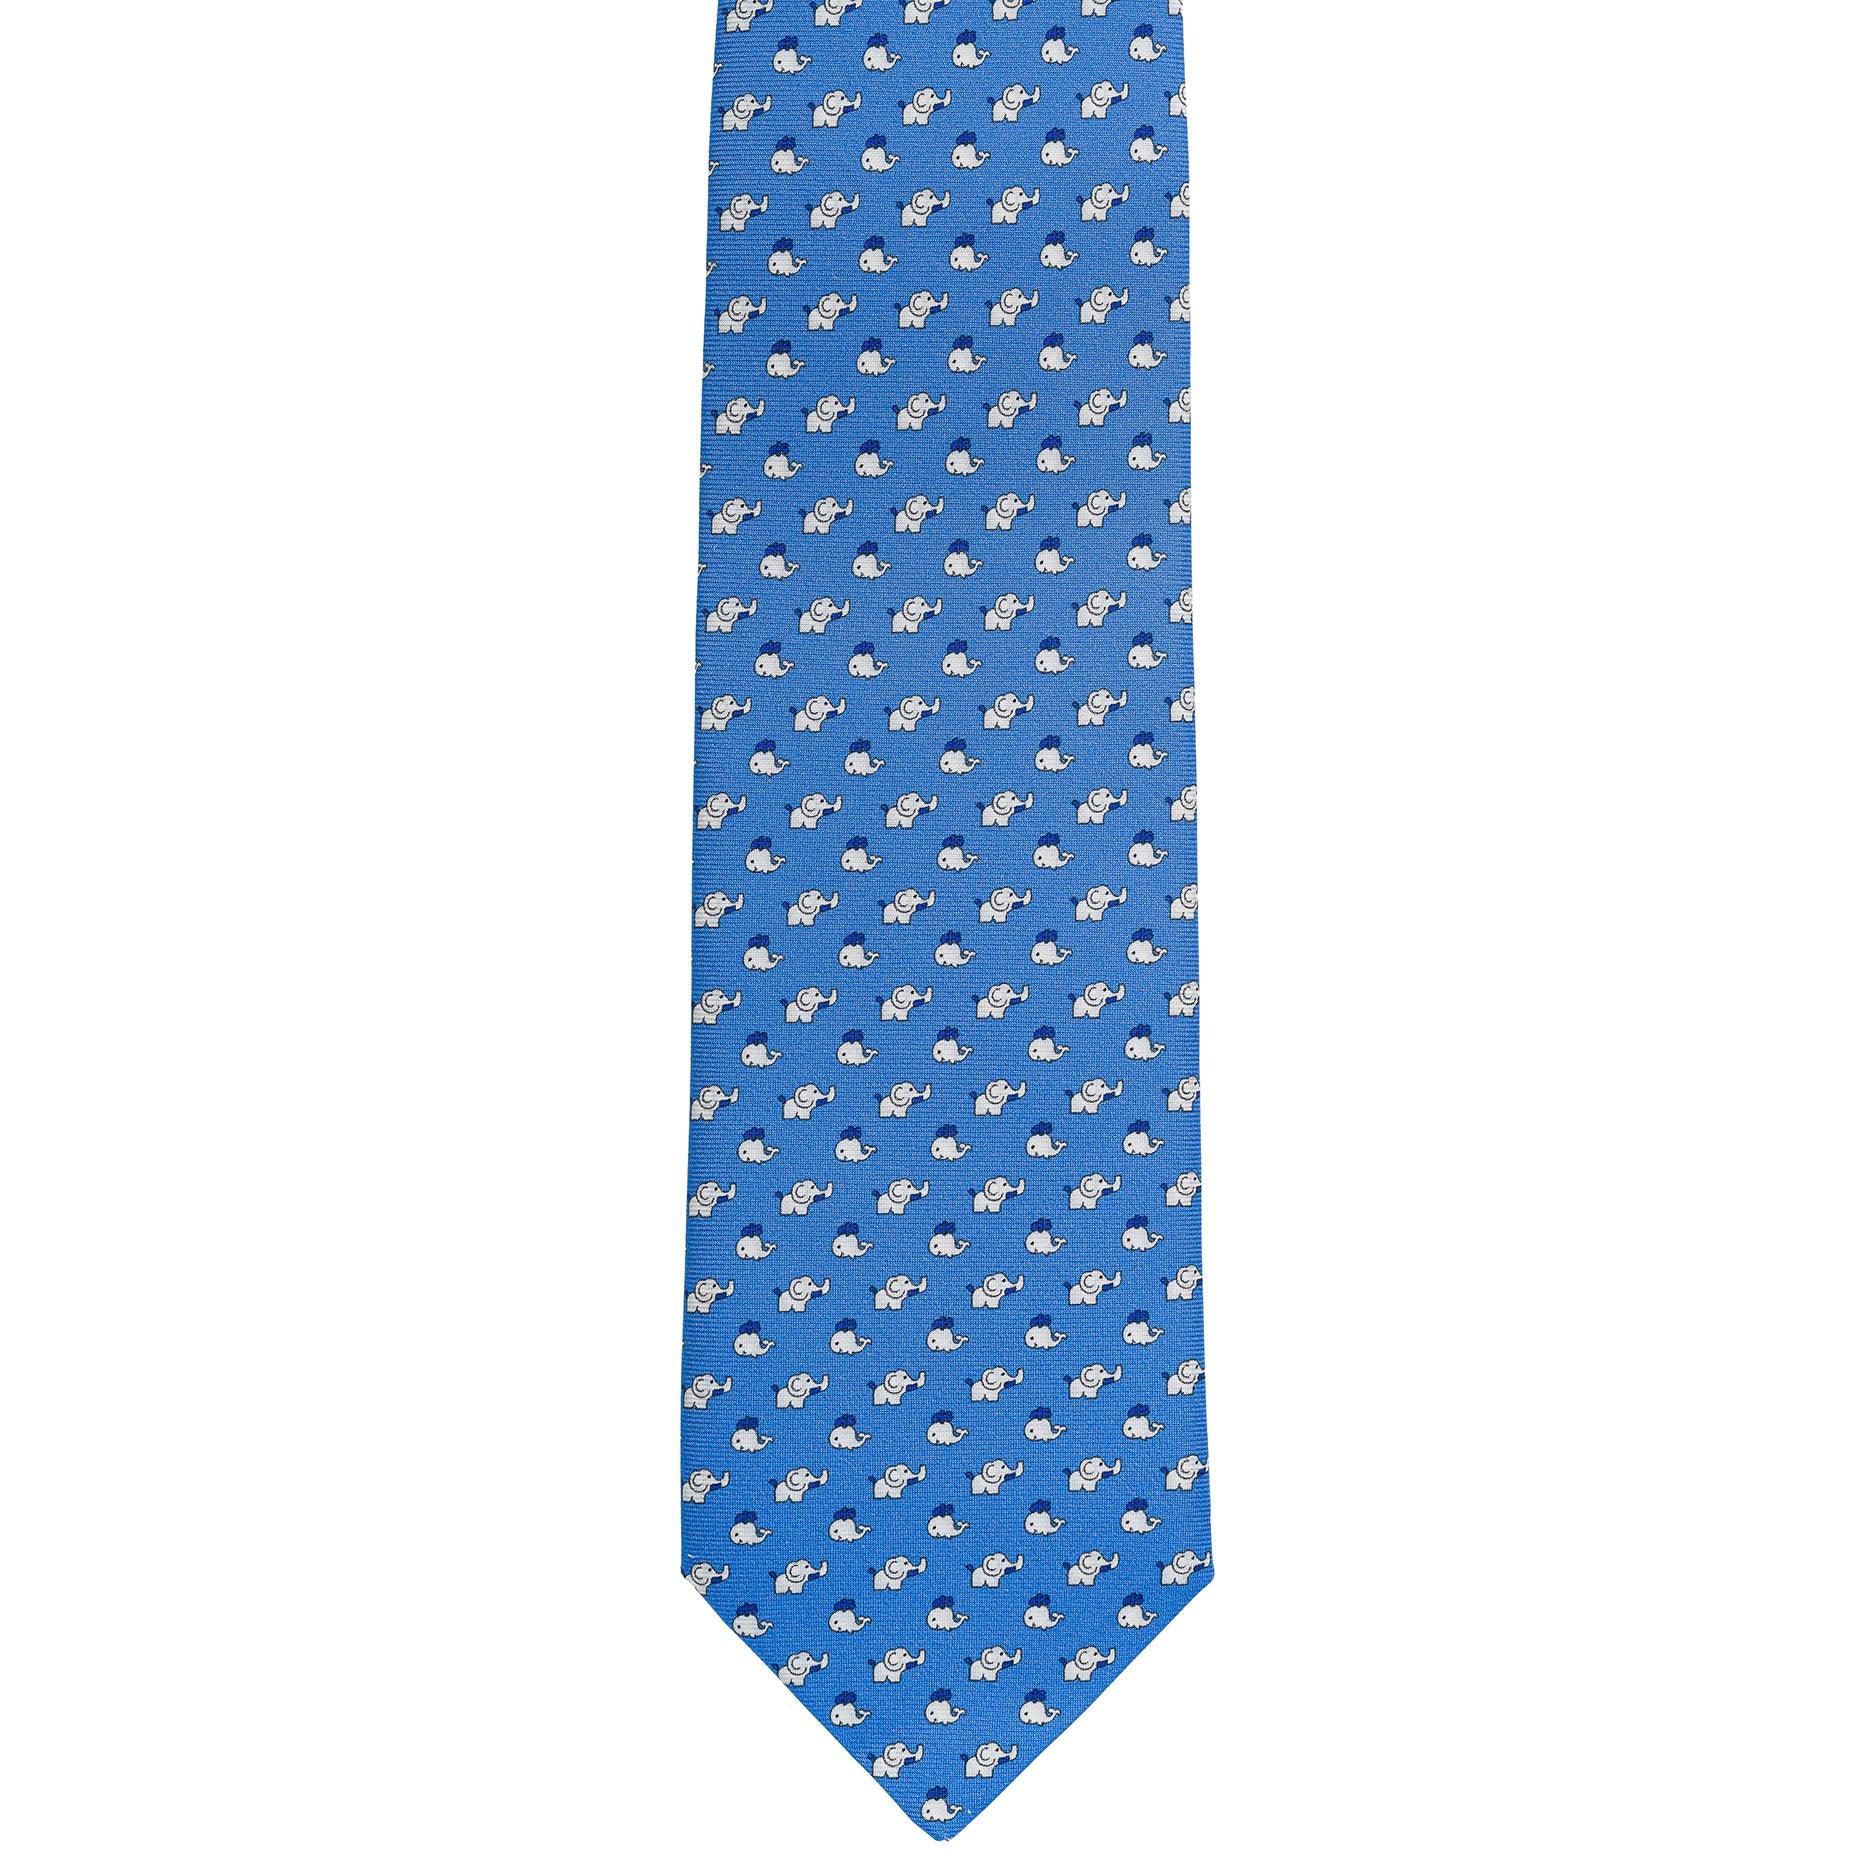 Cravatta 3 pieghe - TAL E2 - Talarico Cravatte